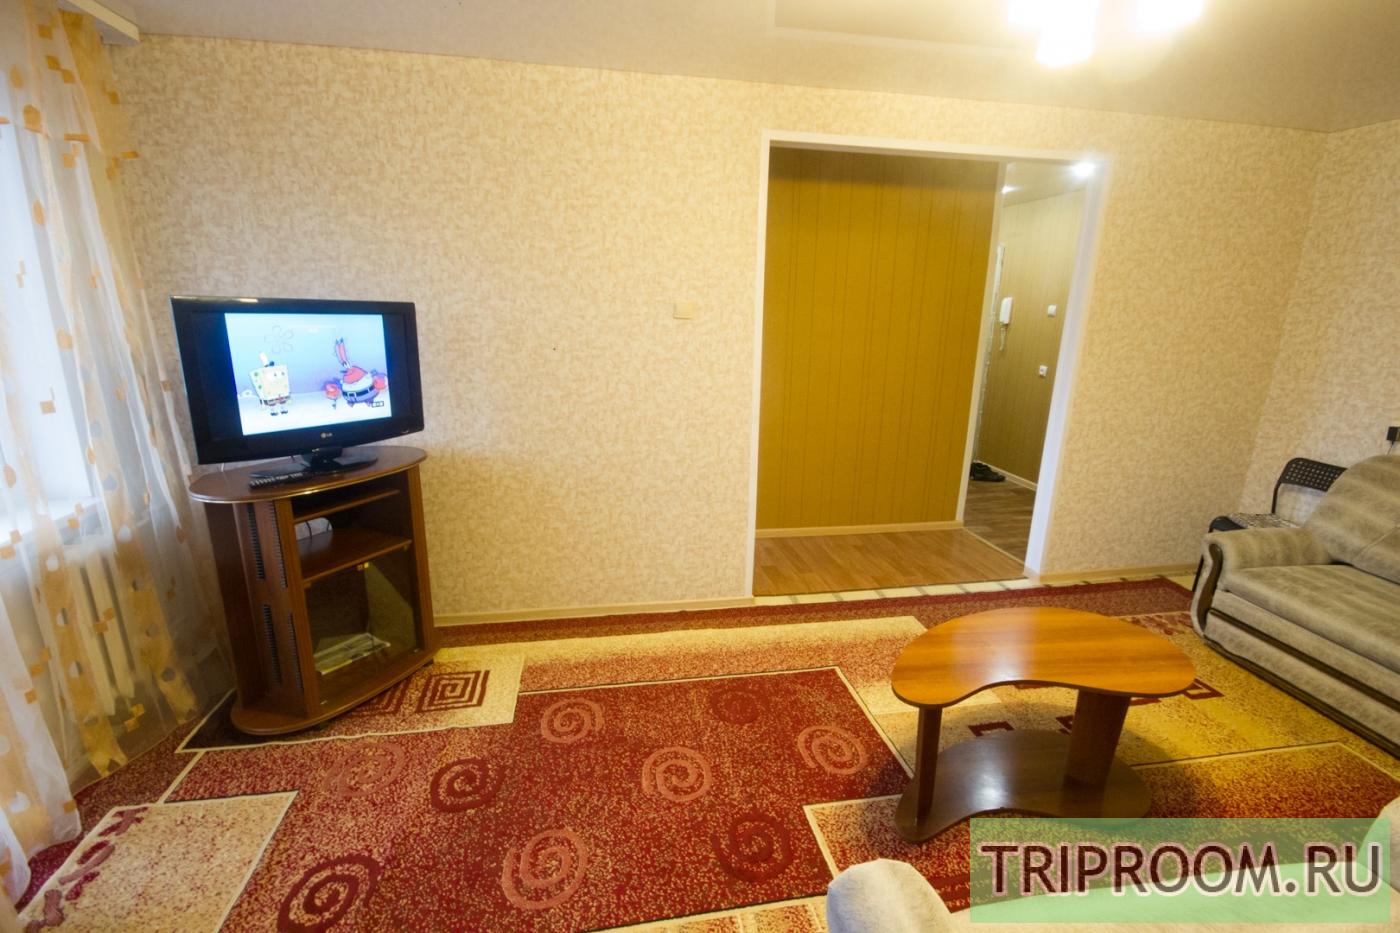 2-комнатная квартира посуточно (вариант № 5390), ул. Достоевского улица, фото № 2